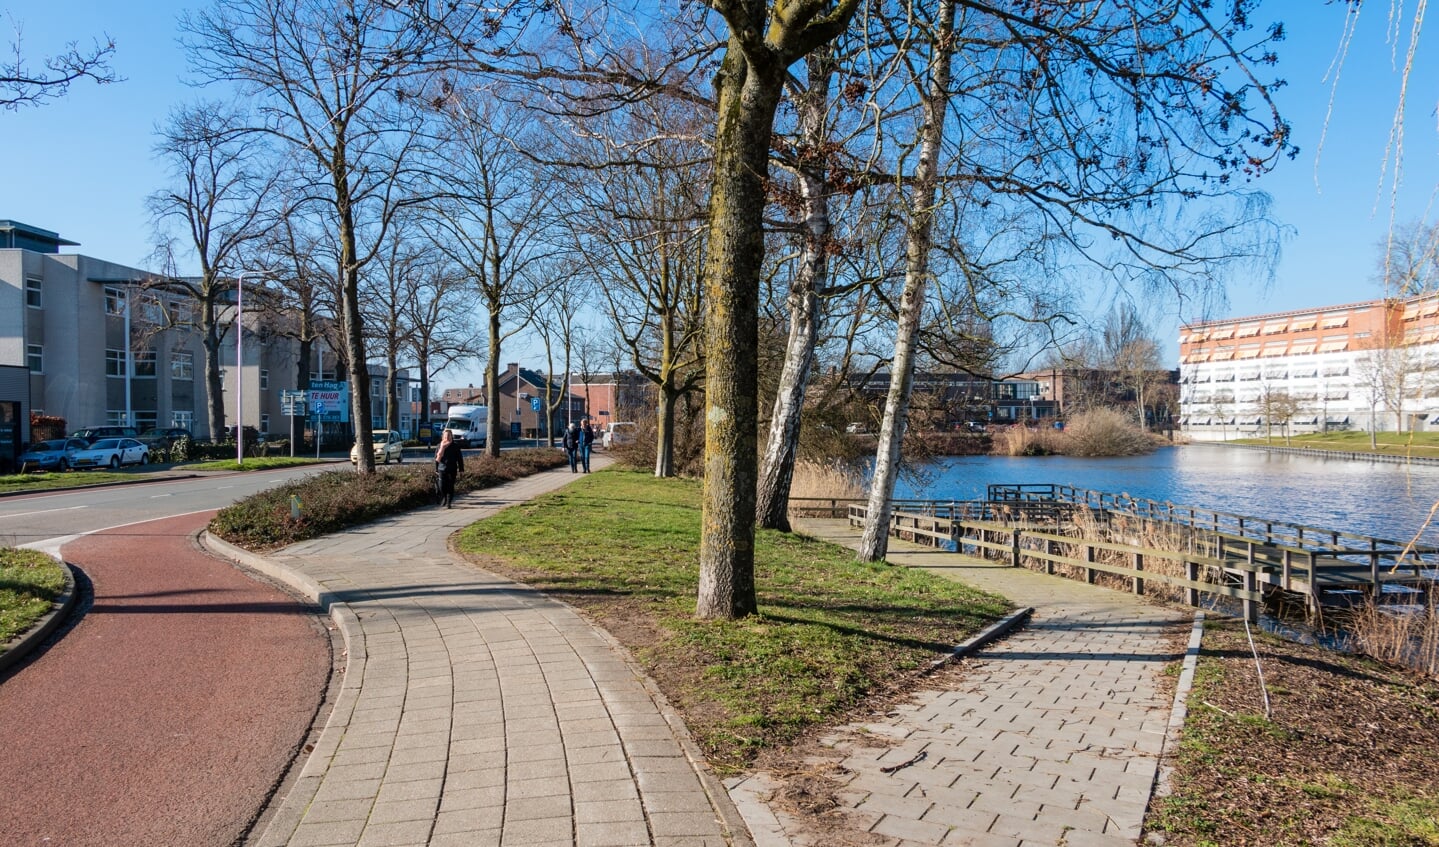 De aanpassingen moeten leiden tot een aantrekkelijker, groene looproute naar het centrum. Foto: Henk Derksen